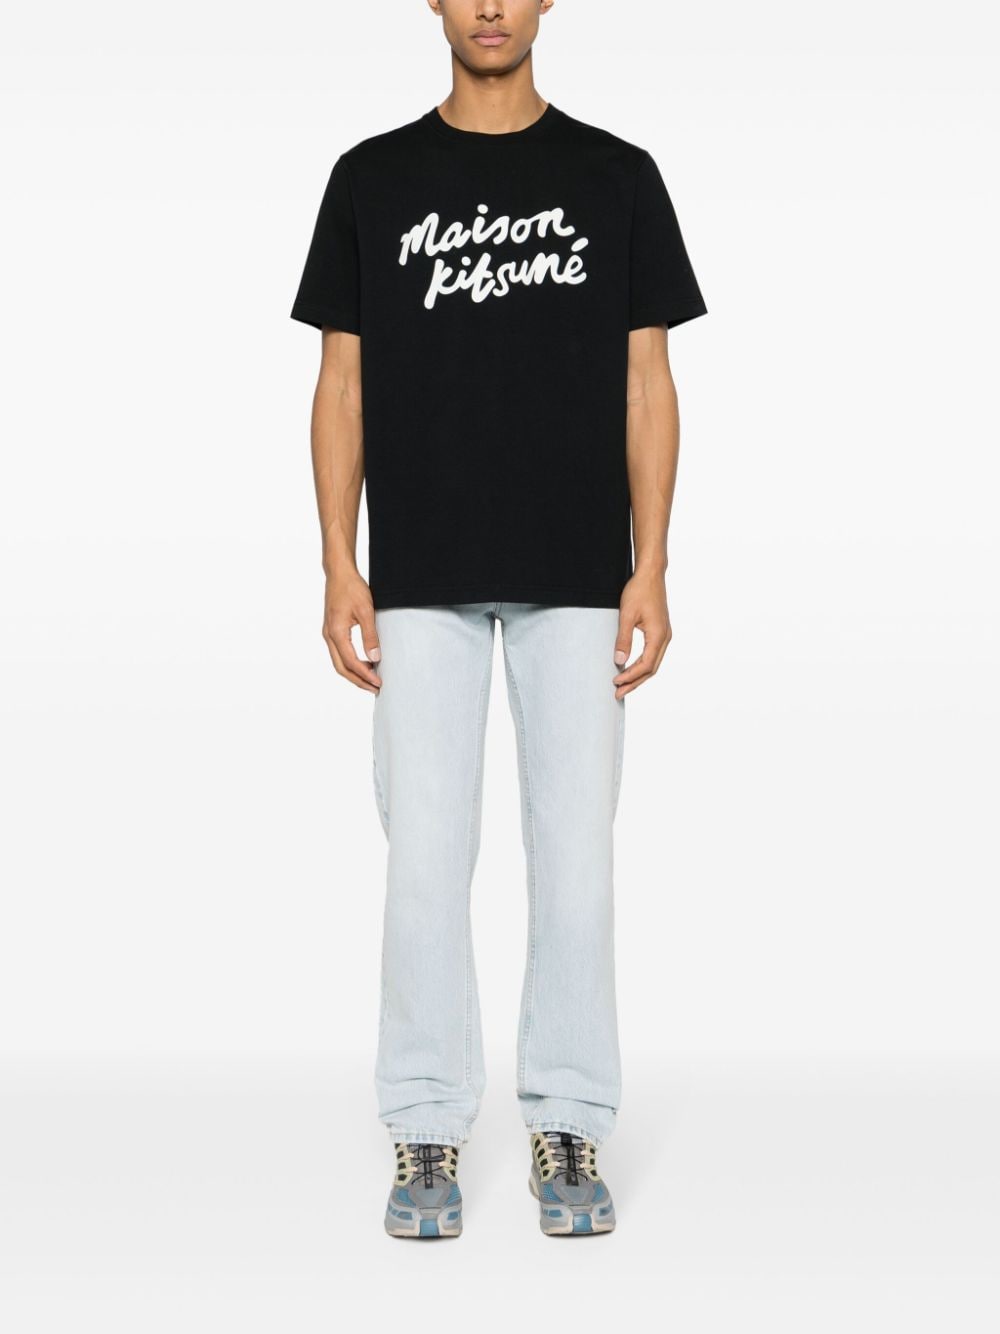 Maison Kitsuné - T-shirt black Handwriting Comfort - Lothaire